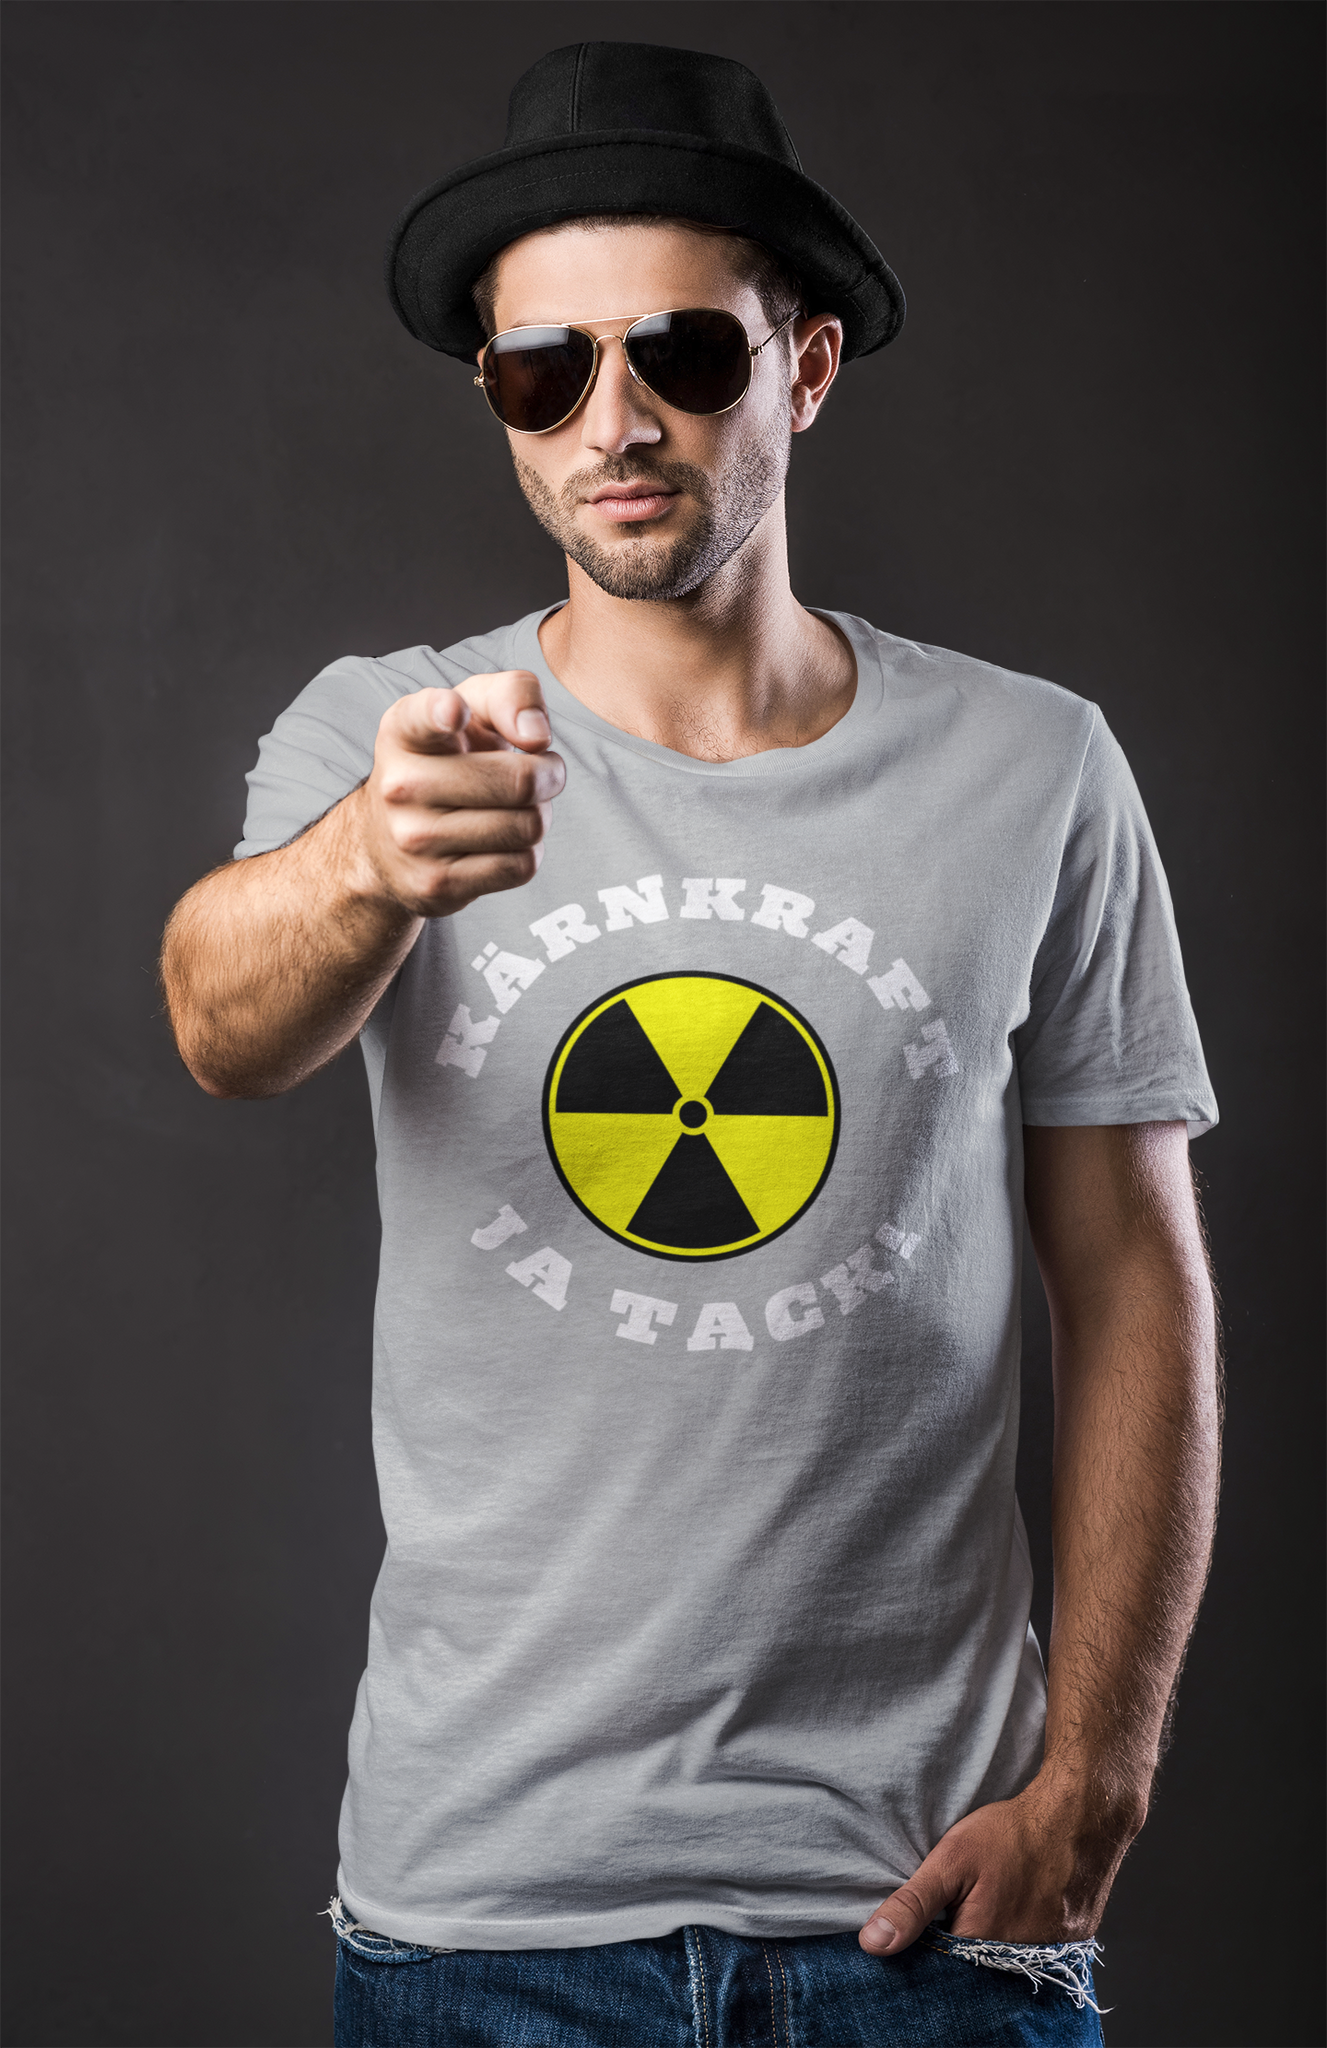 Kärnkraft - Ja Tack! T-Shirt Men